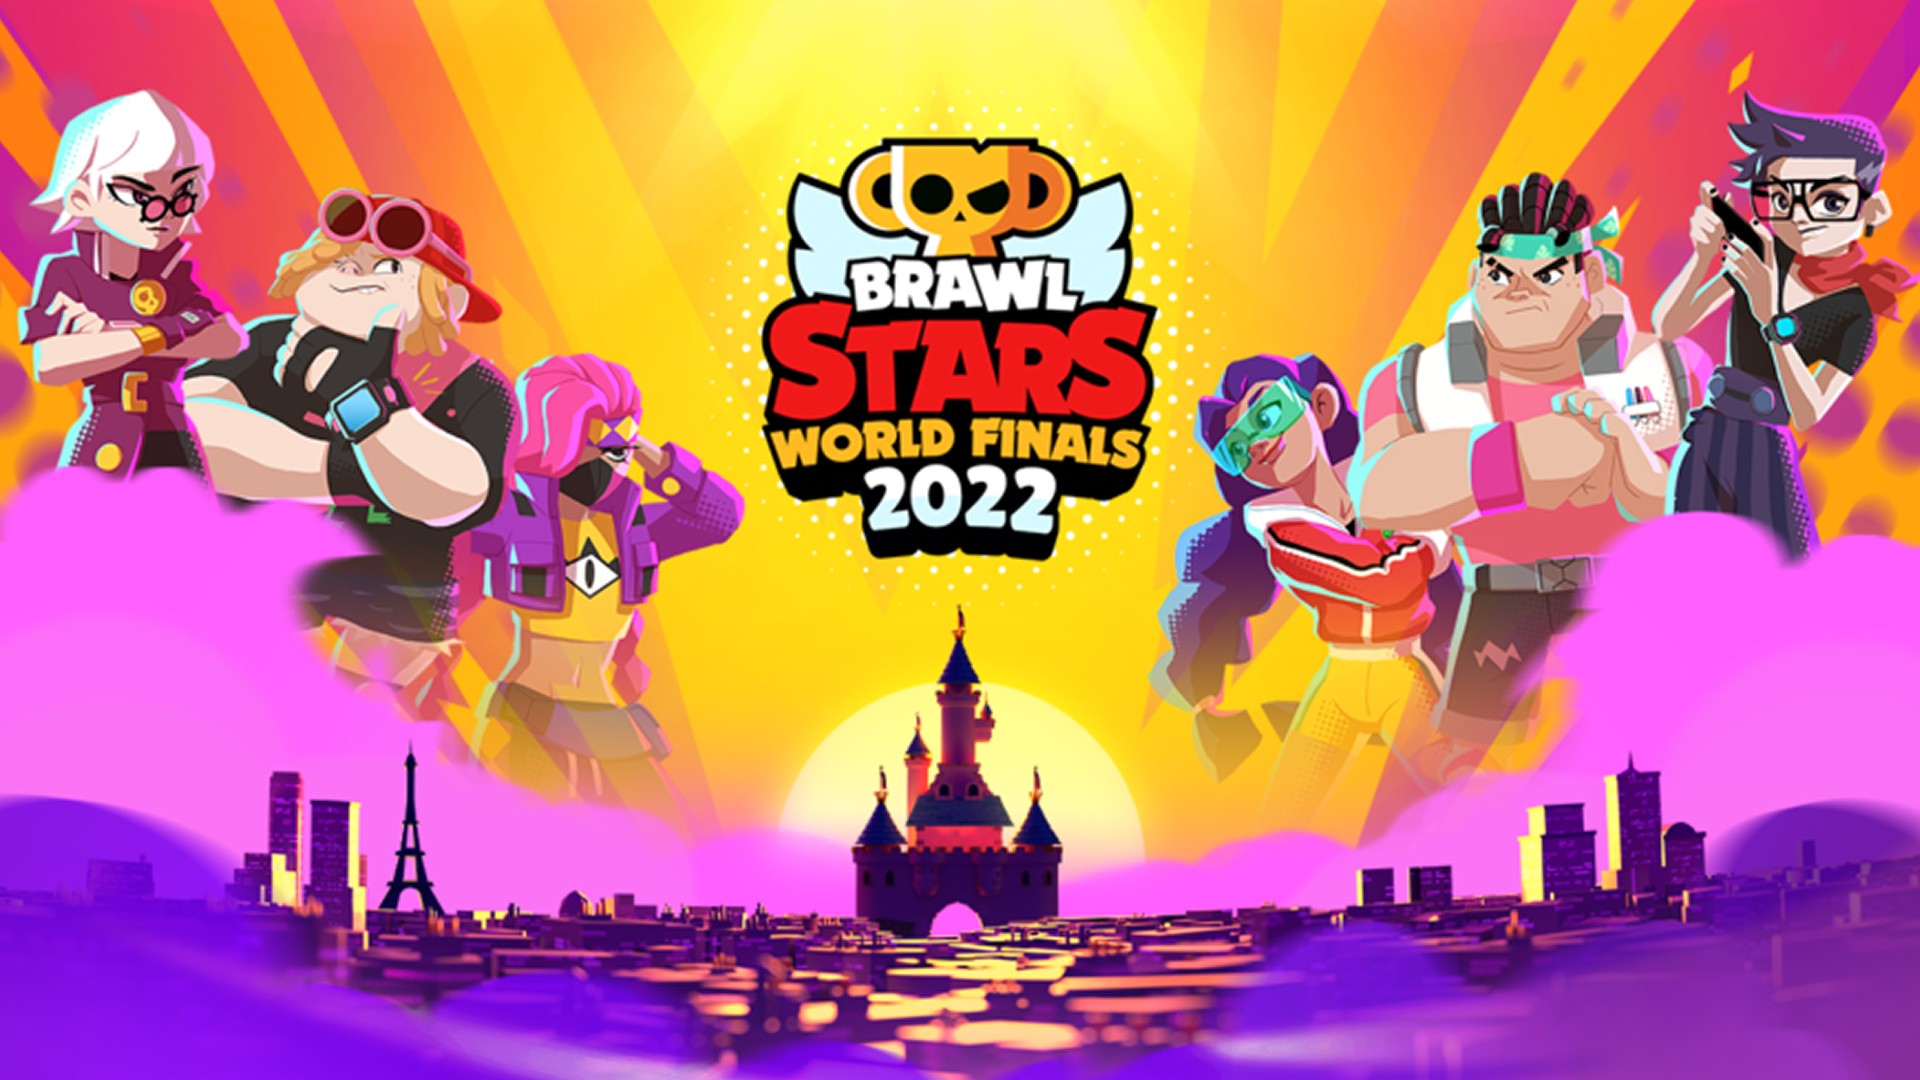 La final mundial de Brawl Stars 2022 tendrá lugar en Disneyland París